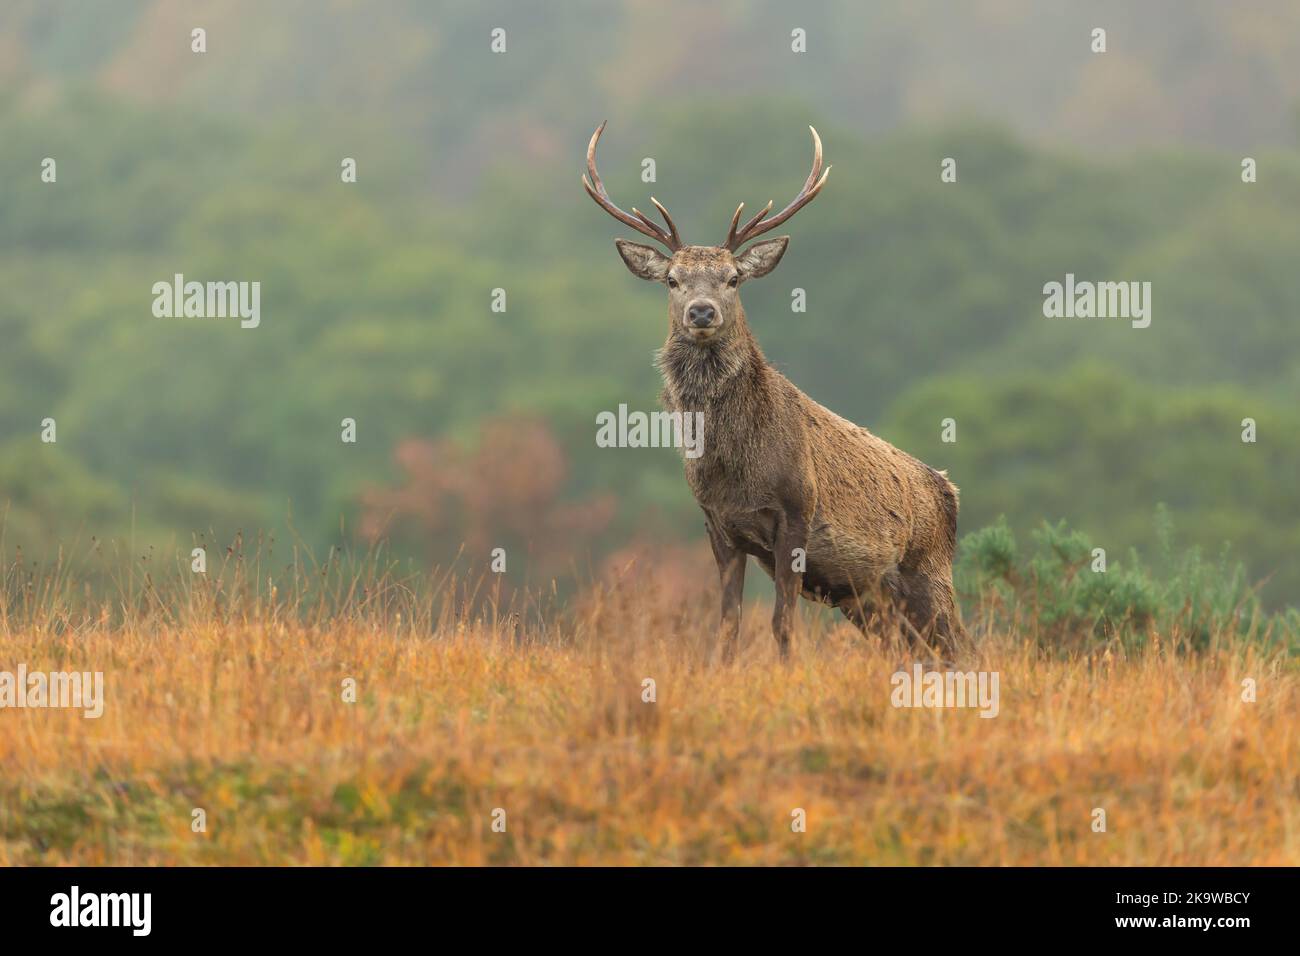 Red Deer stag Alert et face vers l'avant en automne, Strathconon Estate, Scottish Highlands. Nom scientifique: Cervus elaphus. Arrière-plan flou. SPAC Banque D'Images